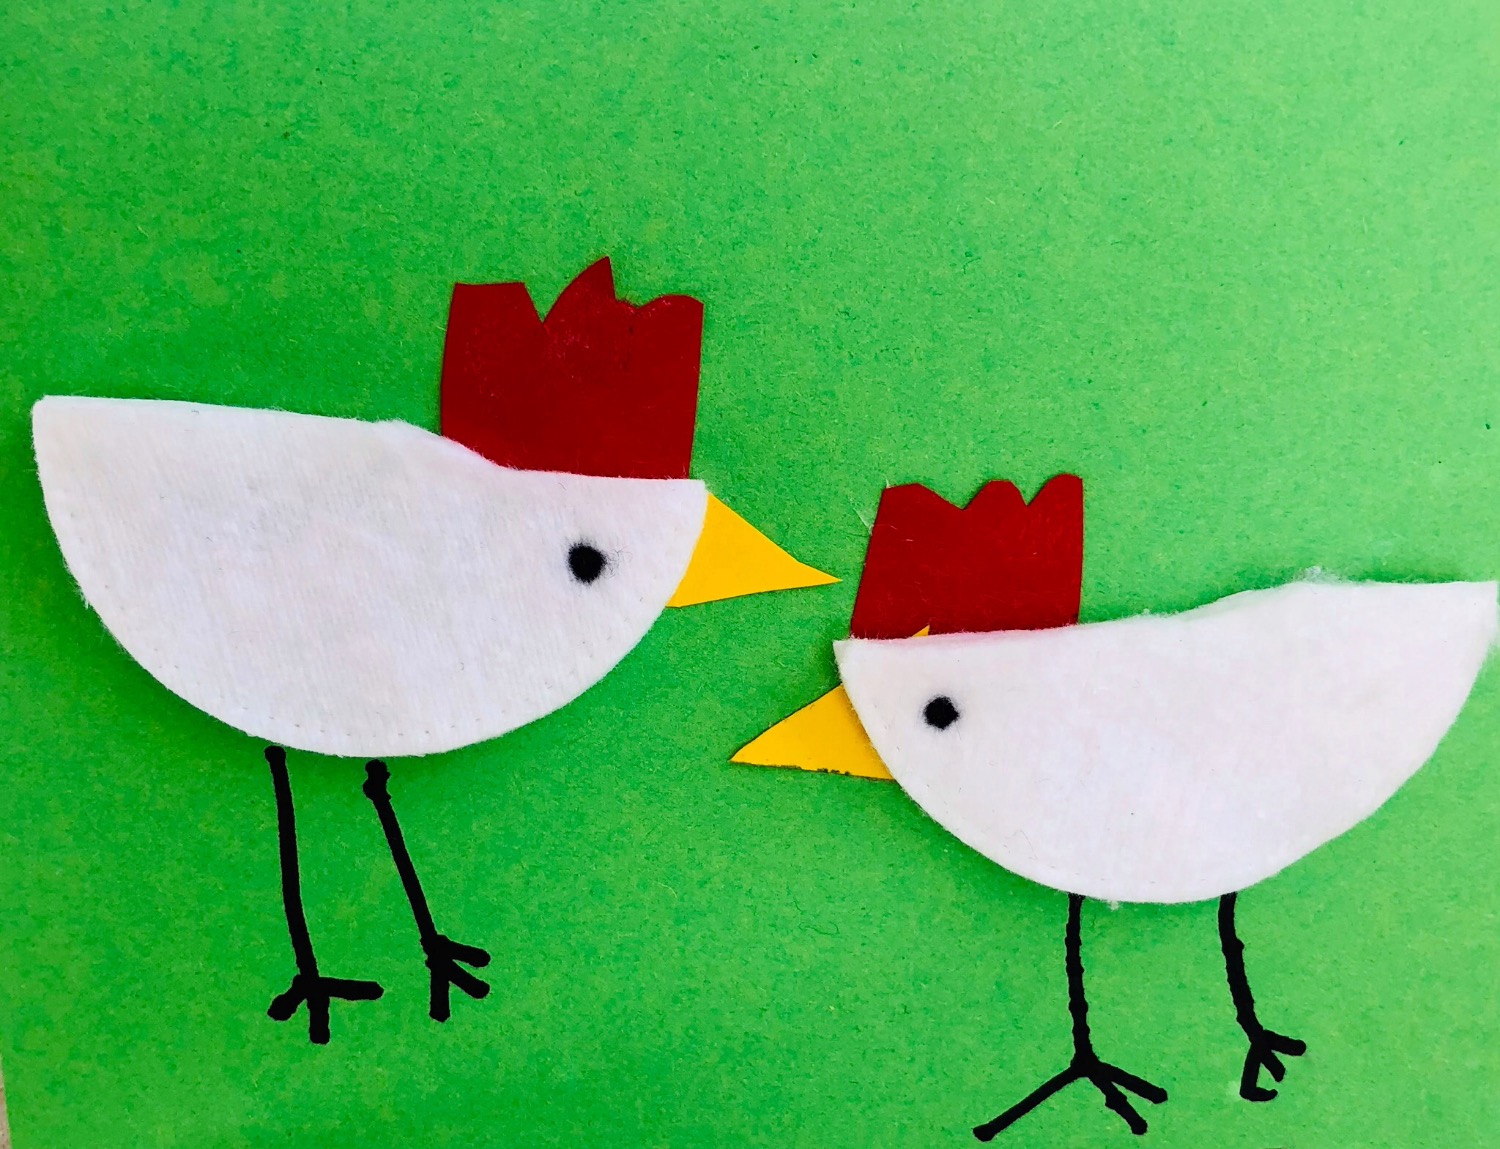 Titelbild zur Idee für die Beschäftigung mit Kindern '(664) Hühner aus Wattepads basteln – Osterkarte basteln'